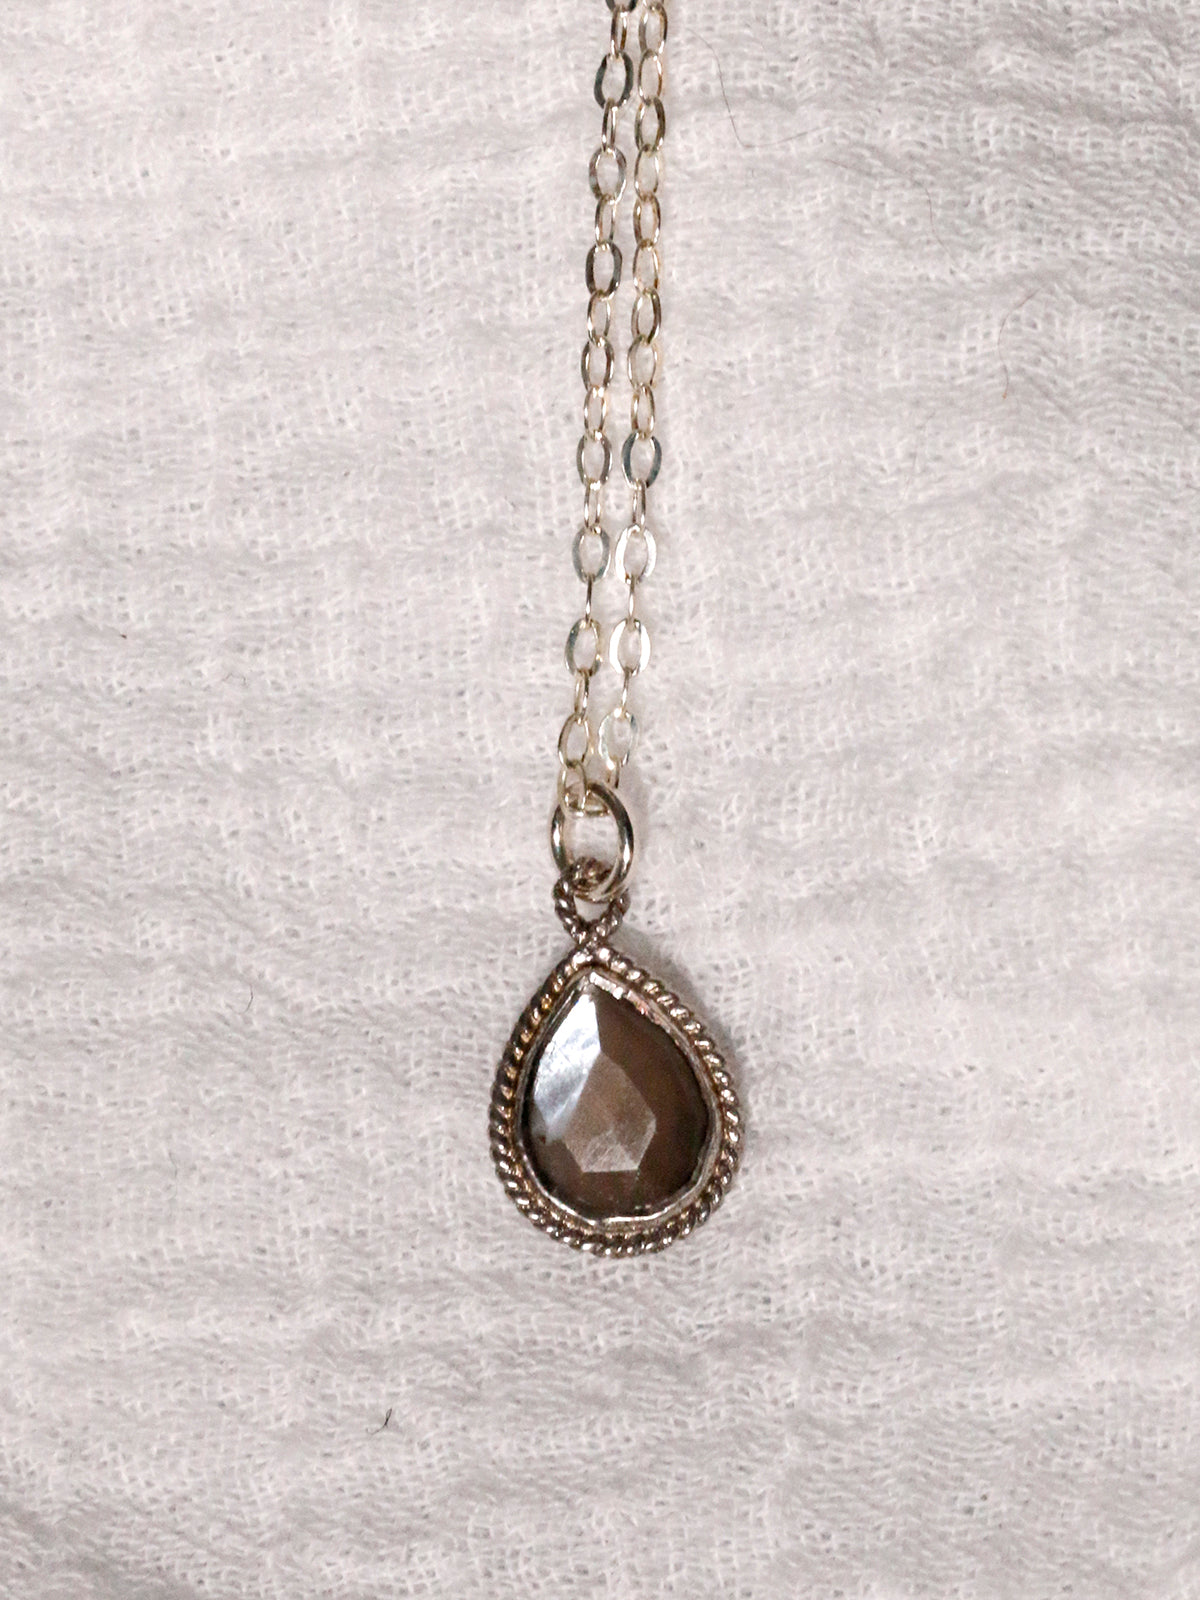 Susan Rifkin Silver Ornate Necklace - Teardrop